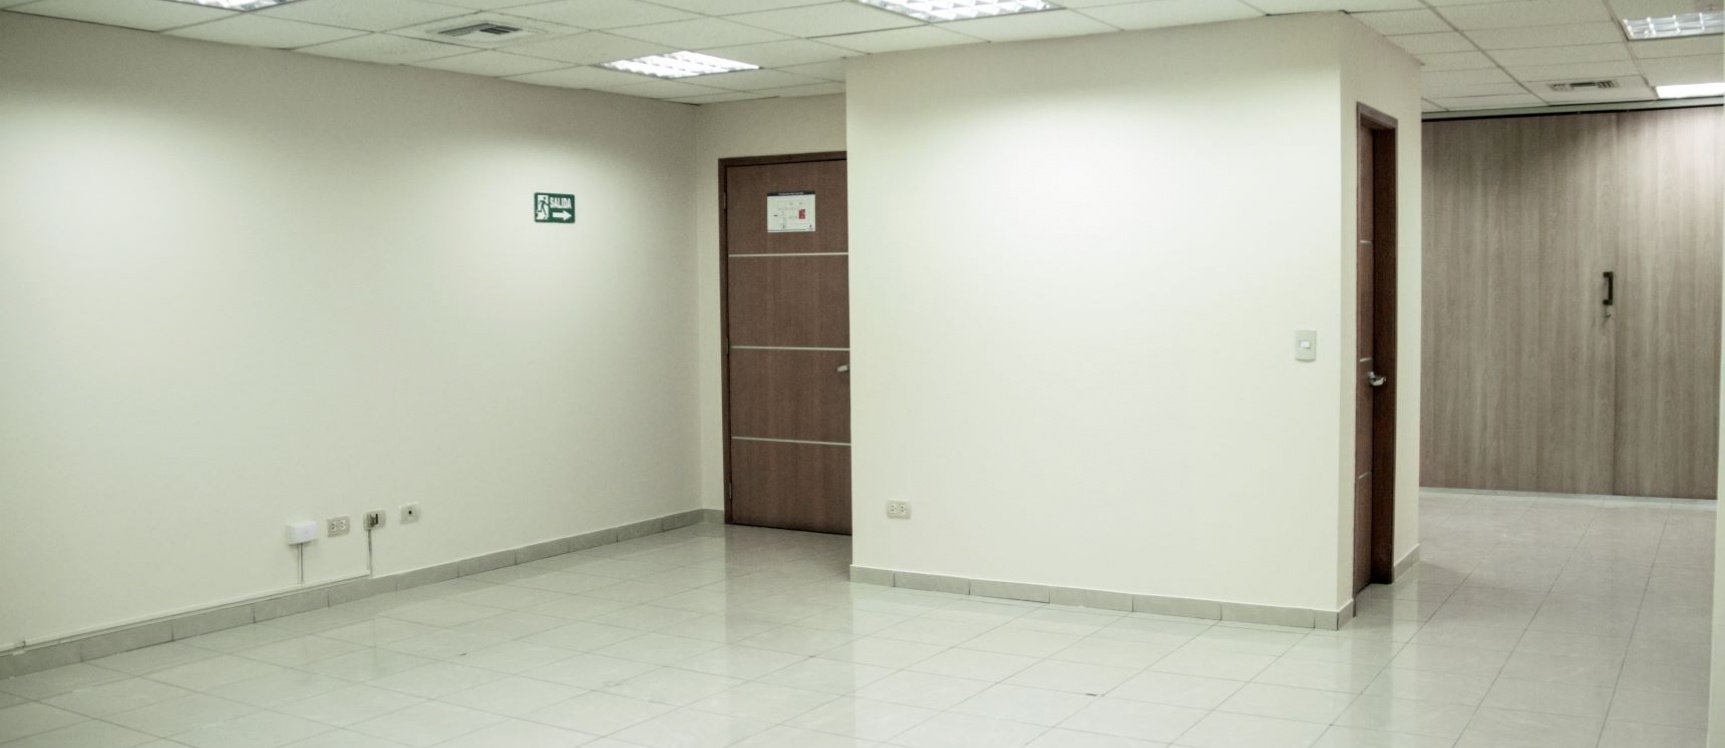 GeoBienes - Oficina en alquiler en el Edificio Professional, Norte de Guayaquil - Plusvalia Guayaquil Casas de venta y alquiler Inmobiliaria Ecuador